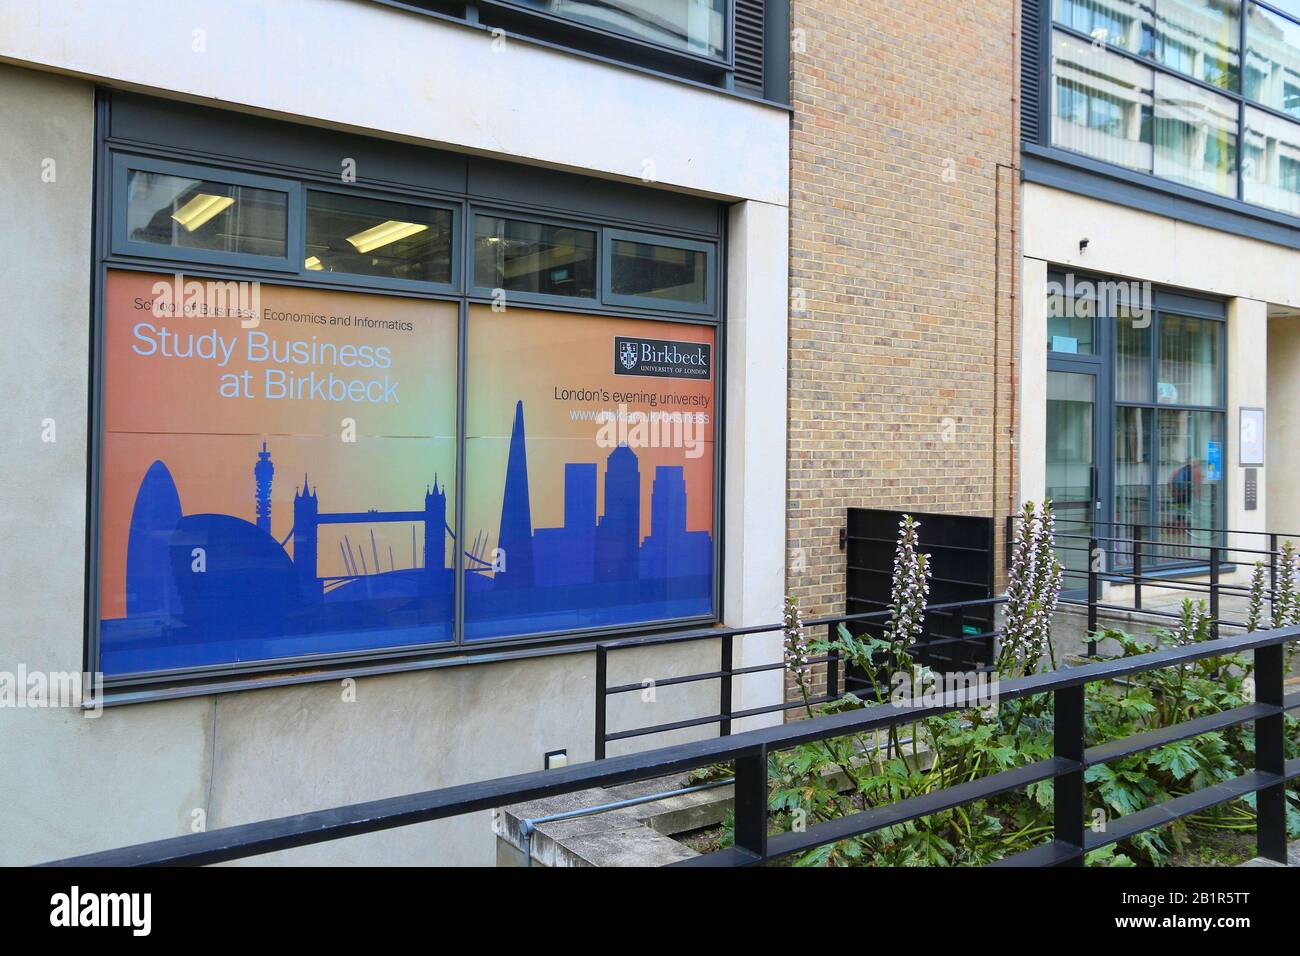 Londres, Royaume-Uni - 6 JUILLET 2016 : école de commerce, d'économie et d'informatique du Birkbeck College, Université de Londres (Royaume-Uni). Banque D'Images